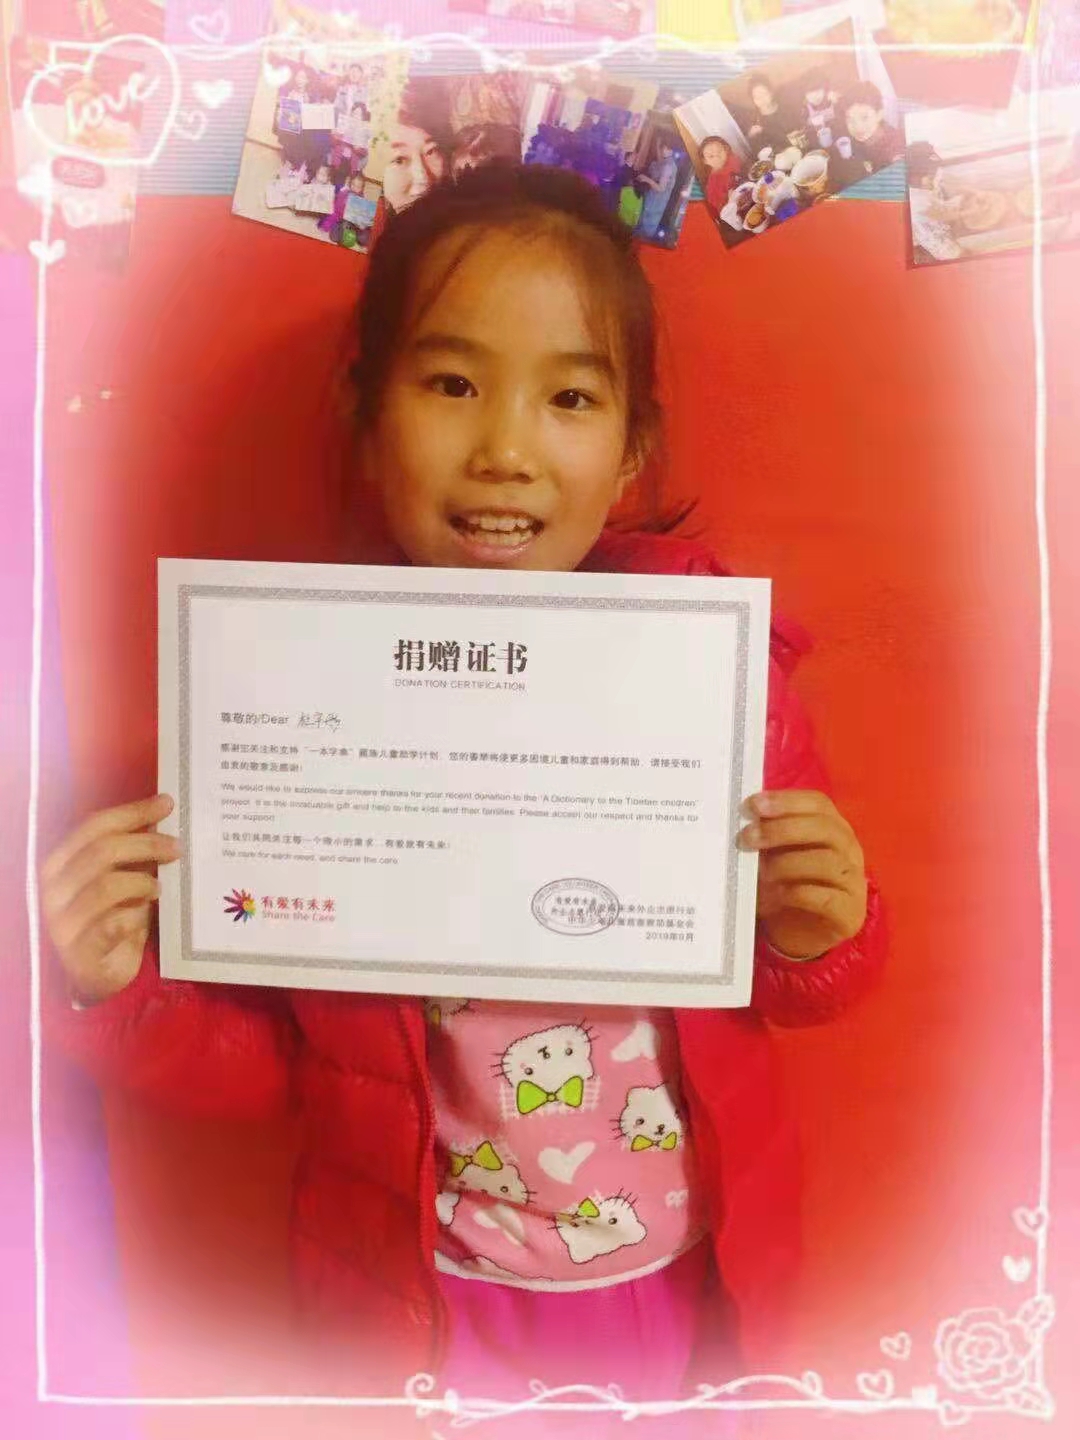 【2019年9月】墨境轩组织学生送藏族孩子一本字典助学活动 活动 第4张